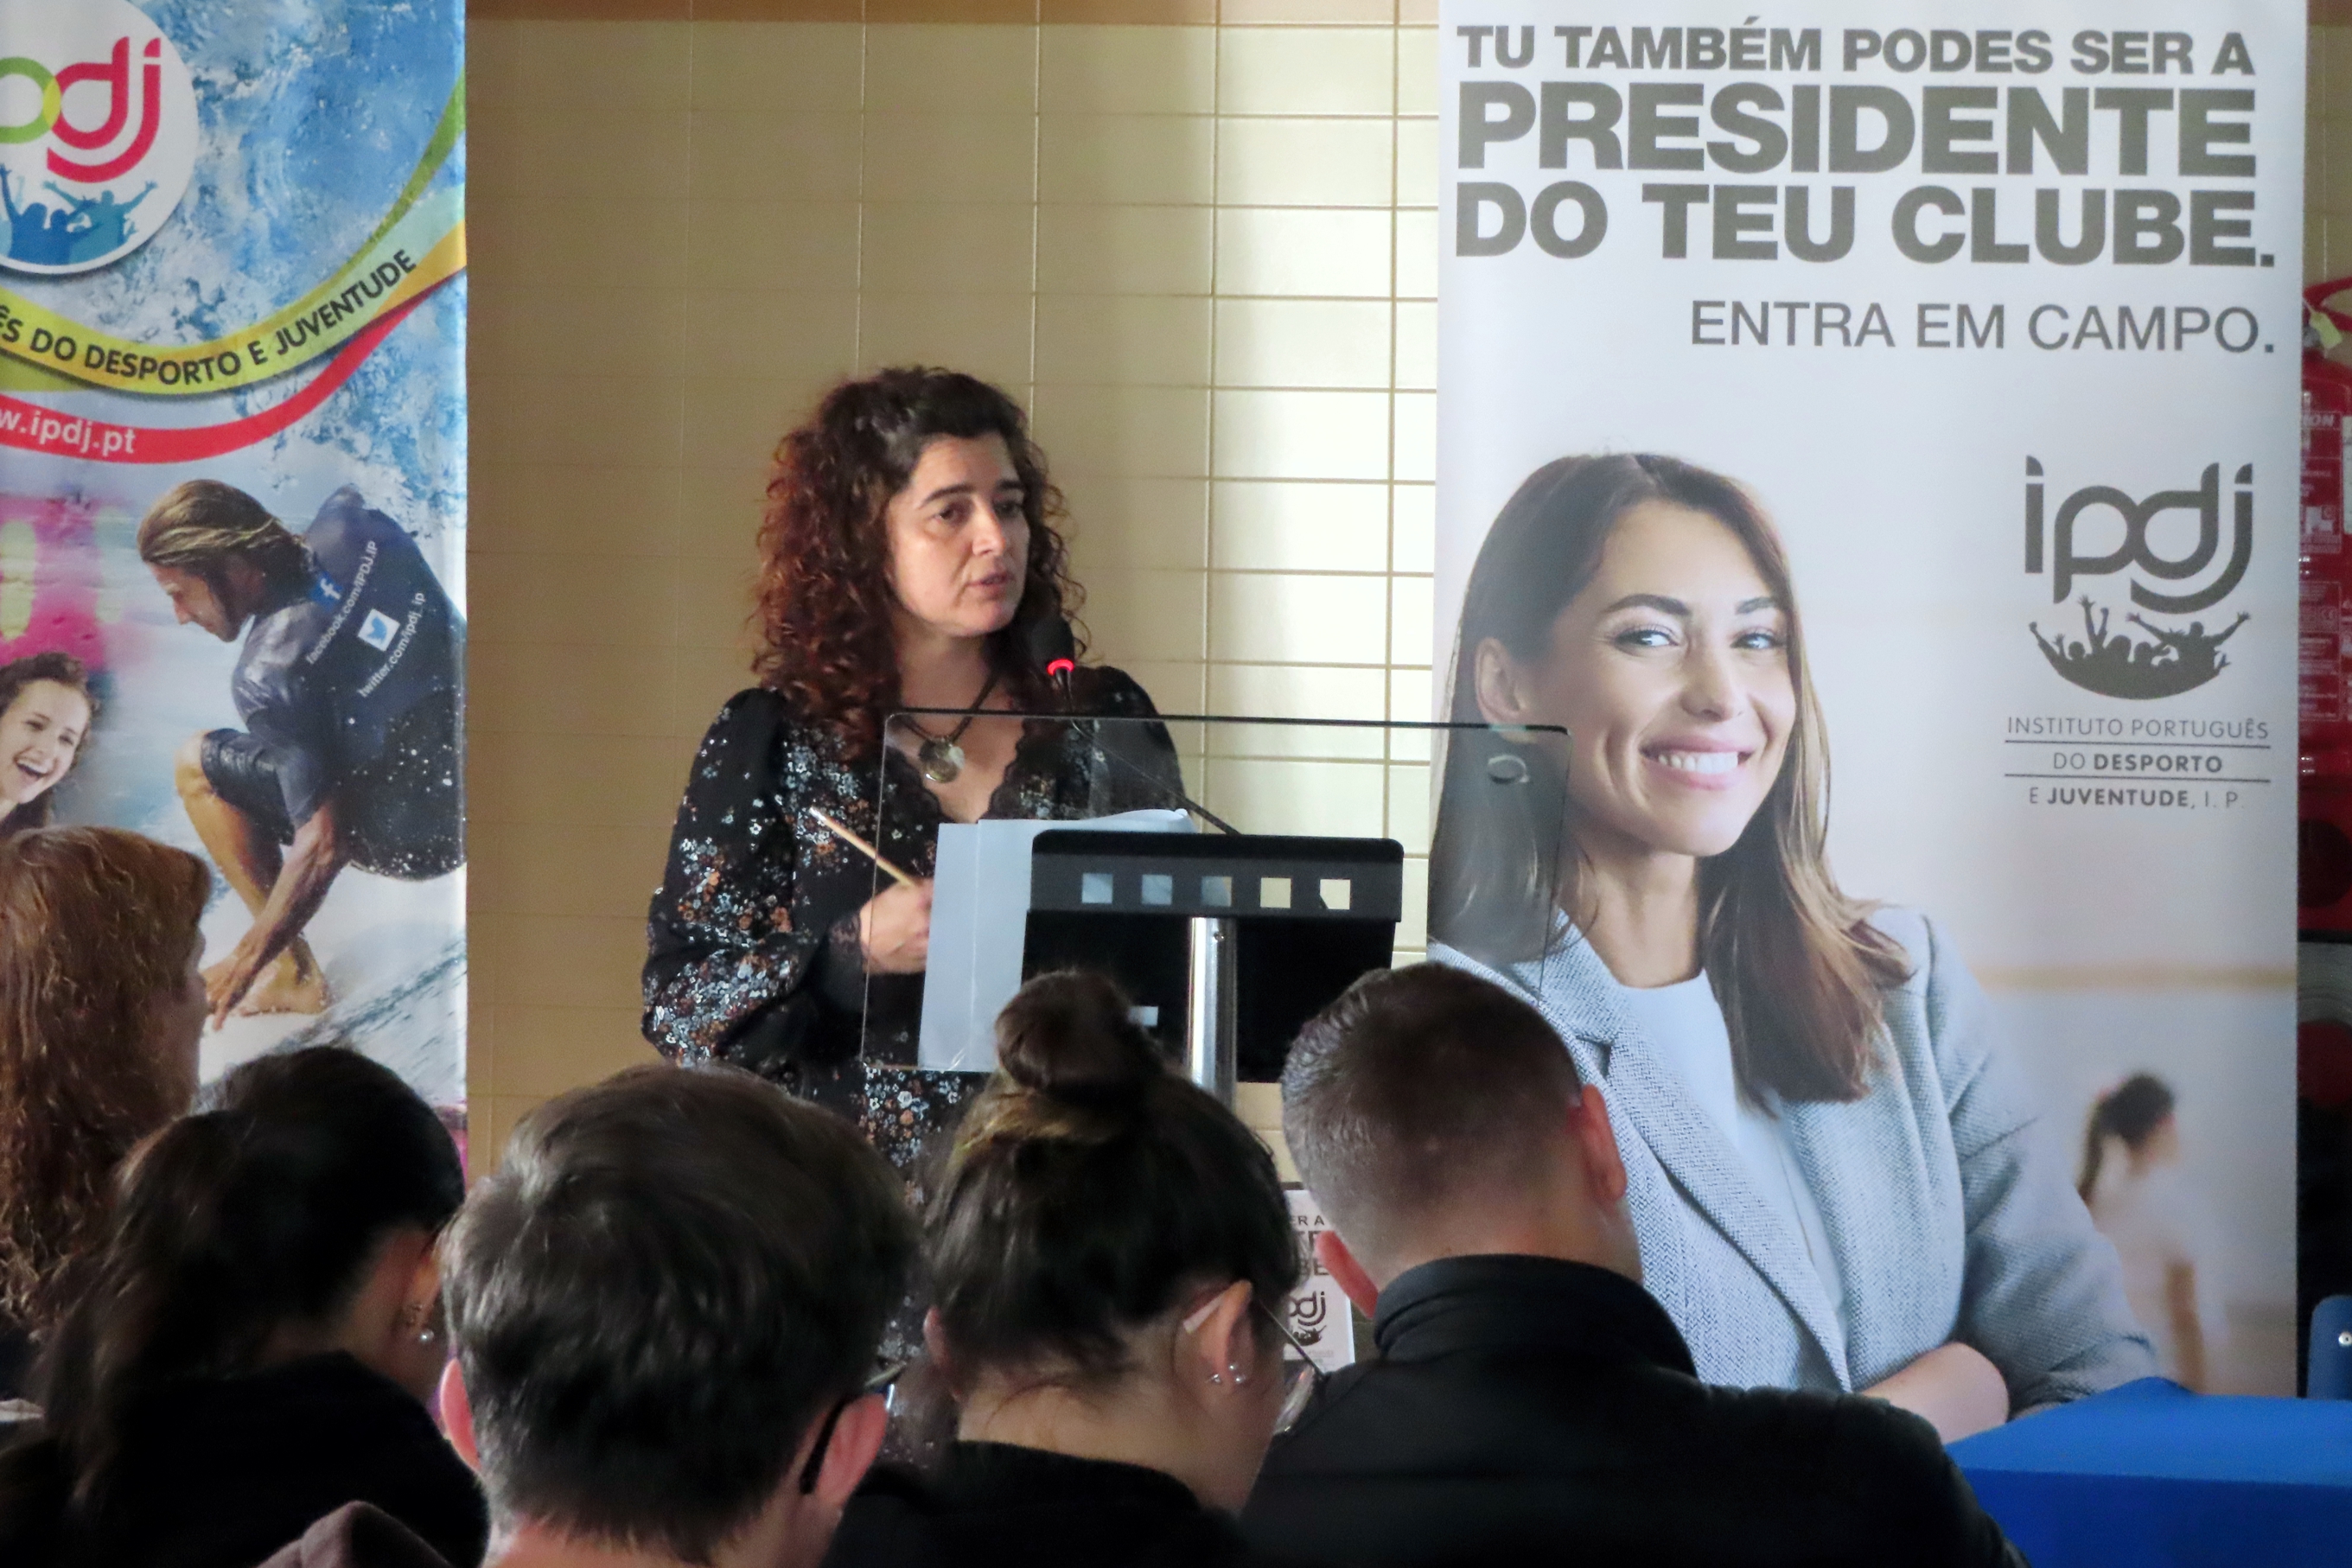 Técnica do IPDJ Rita Felícia a apresentar a campanha, tendo como fundo um Roll-Up do IPDJ e outro da Campanha «Tu também podes ser presidente do teu clube».